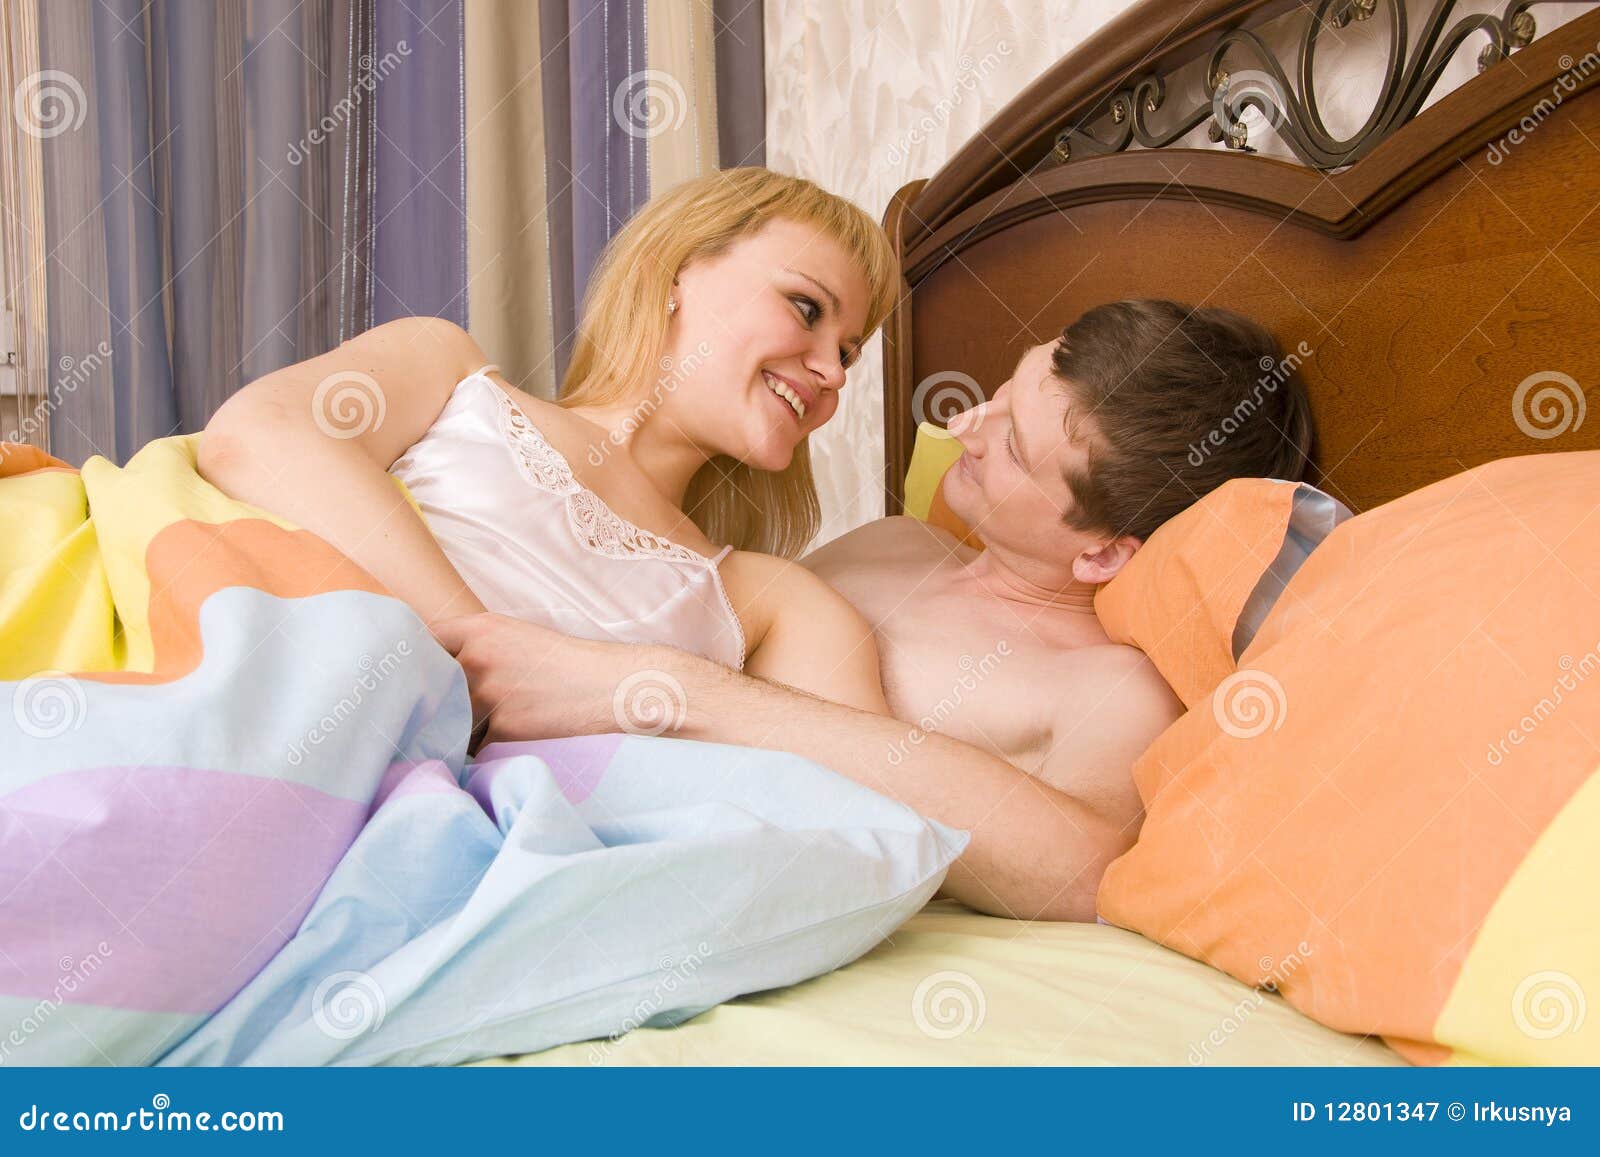 с мамой спит в одной постели эротика фото 23